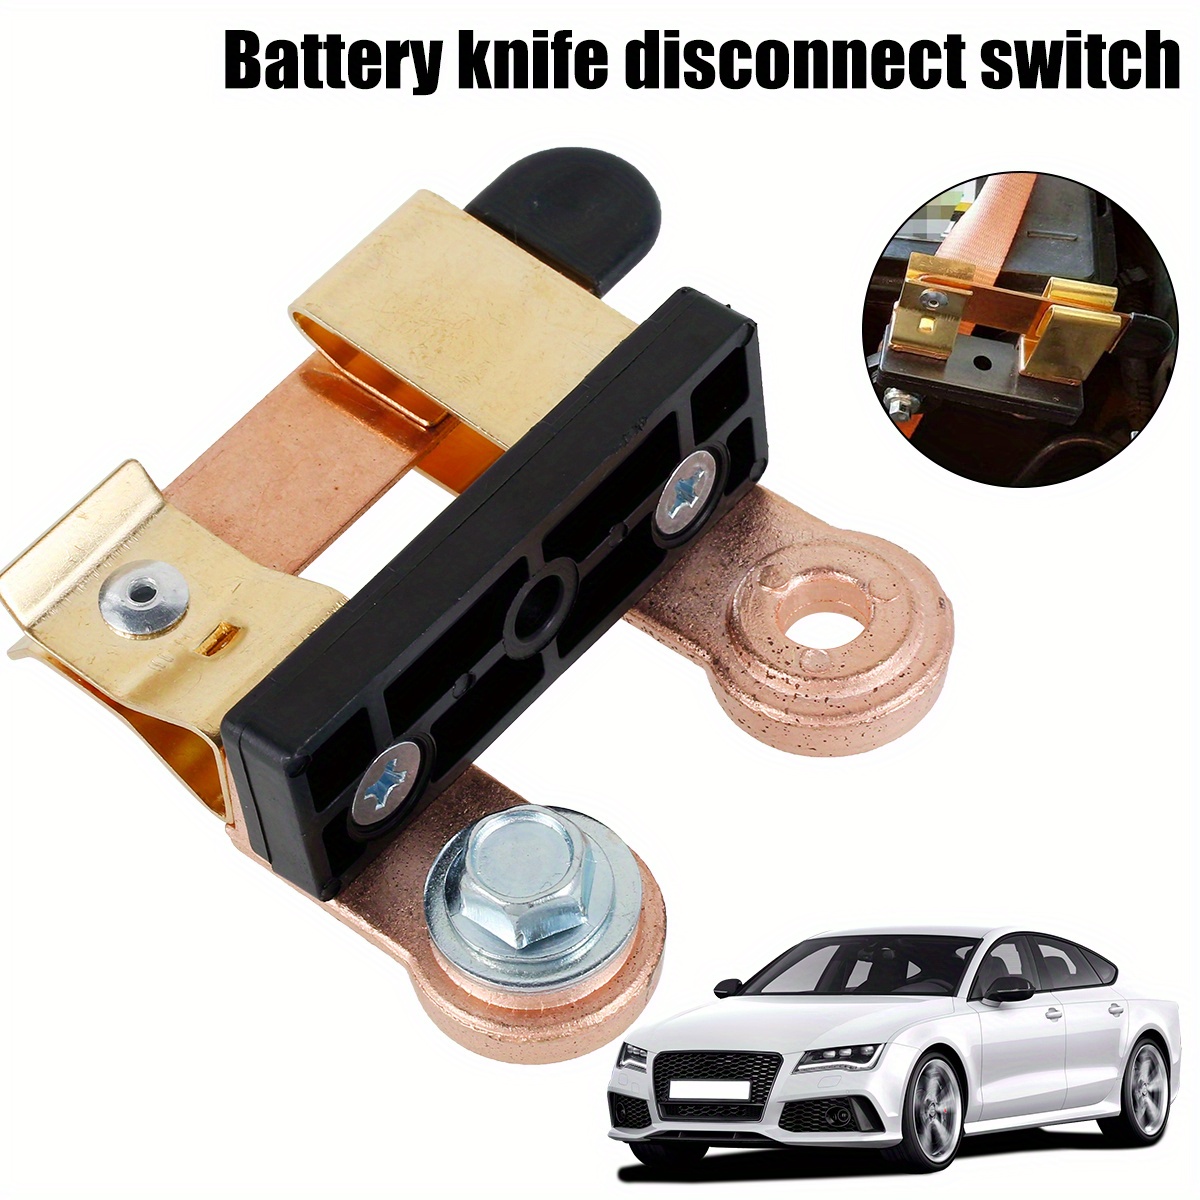 Batterie-Isolator-Schalter, Auto Auto Batterie Cut Off Schalter 12V / 24V  Notstrom Kill Trennschalter Schalter